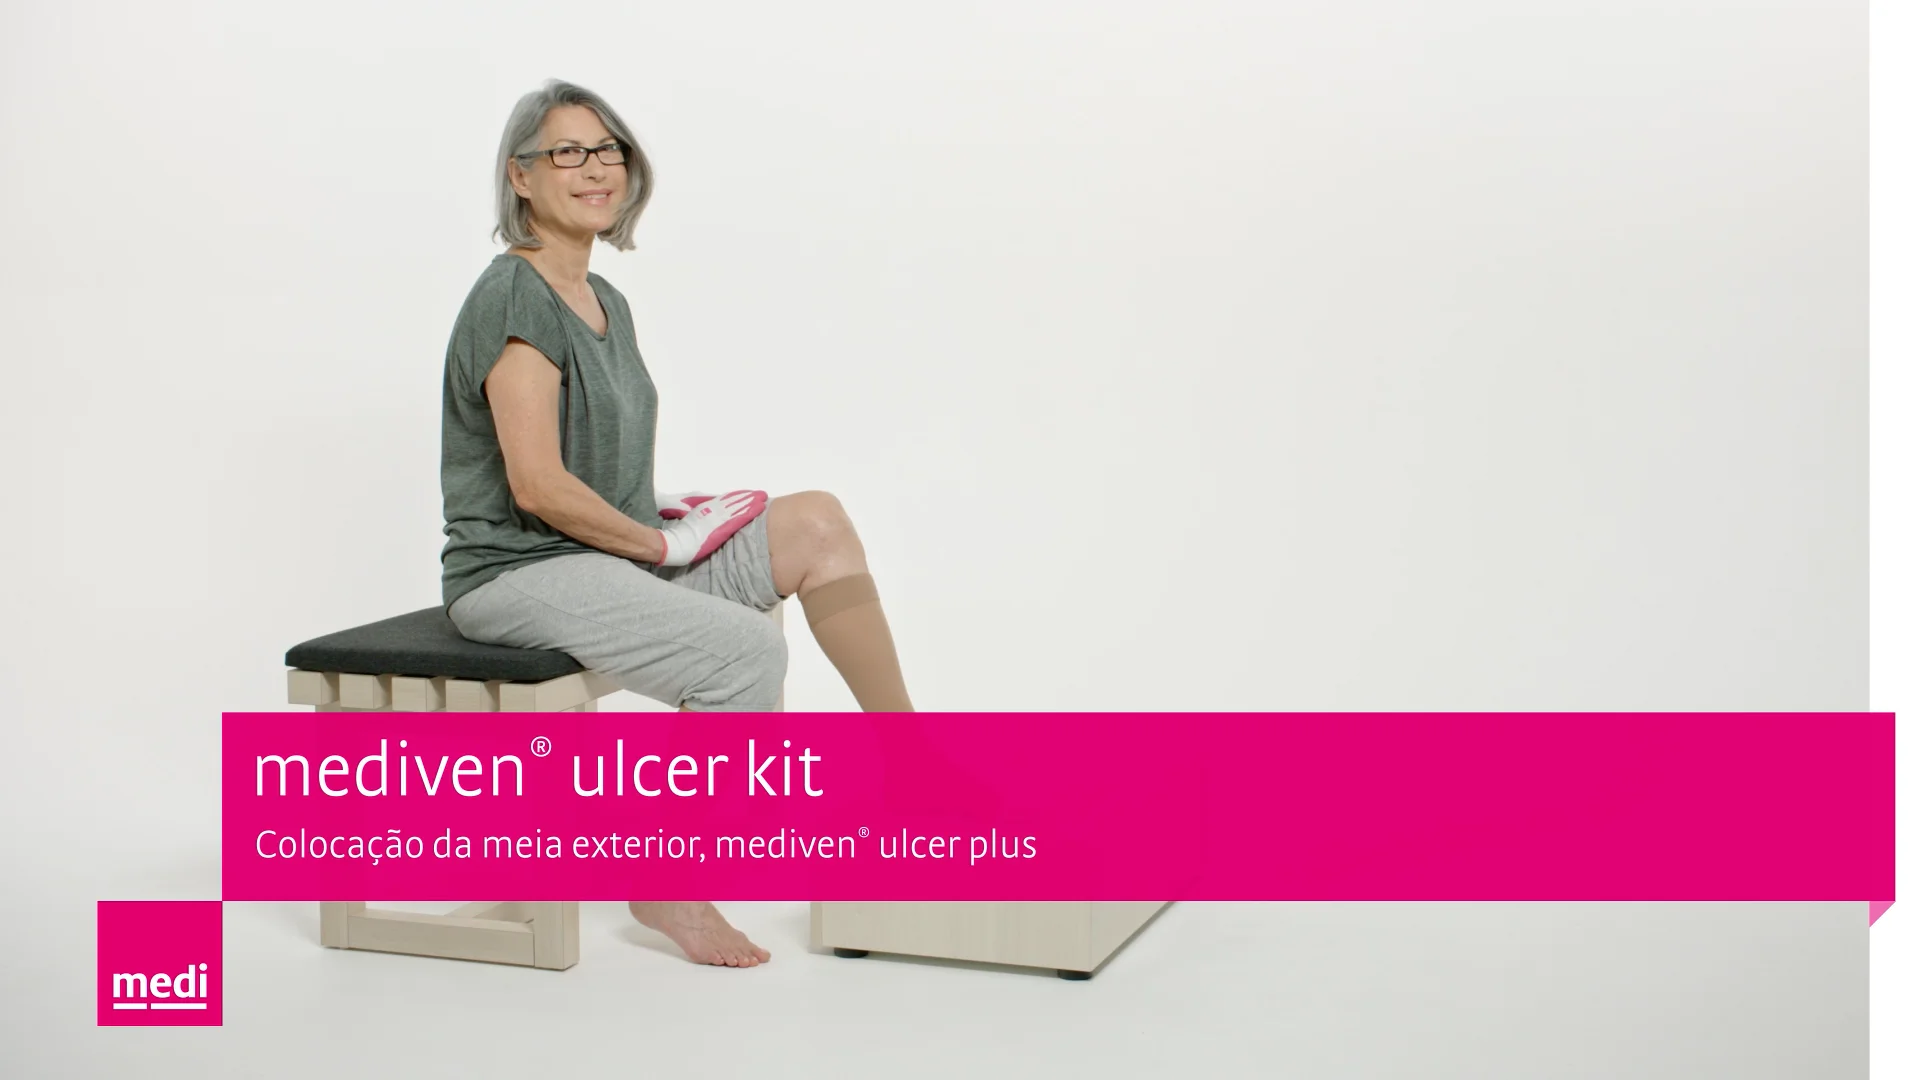 mediven® ulcer kit – Colocação da meia exterior, mediven® ulcer plus on  Vimeo